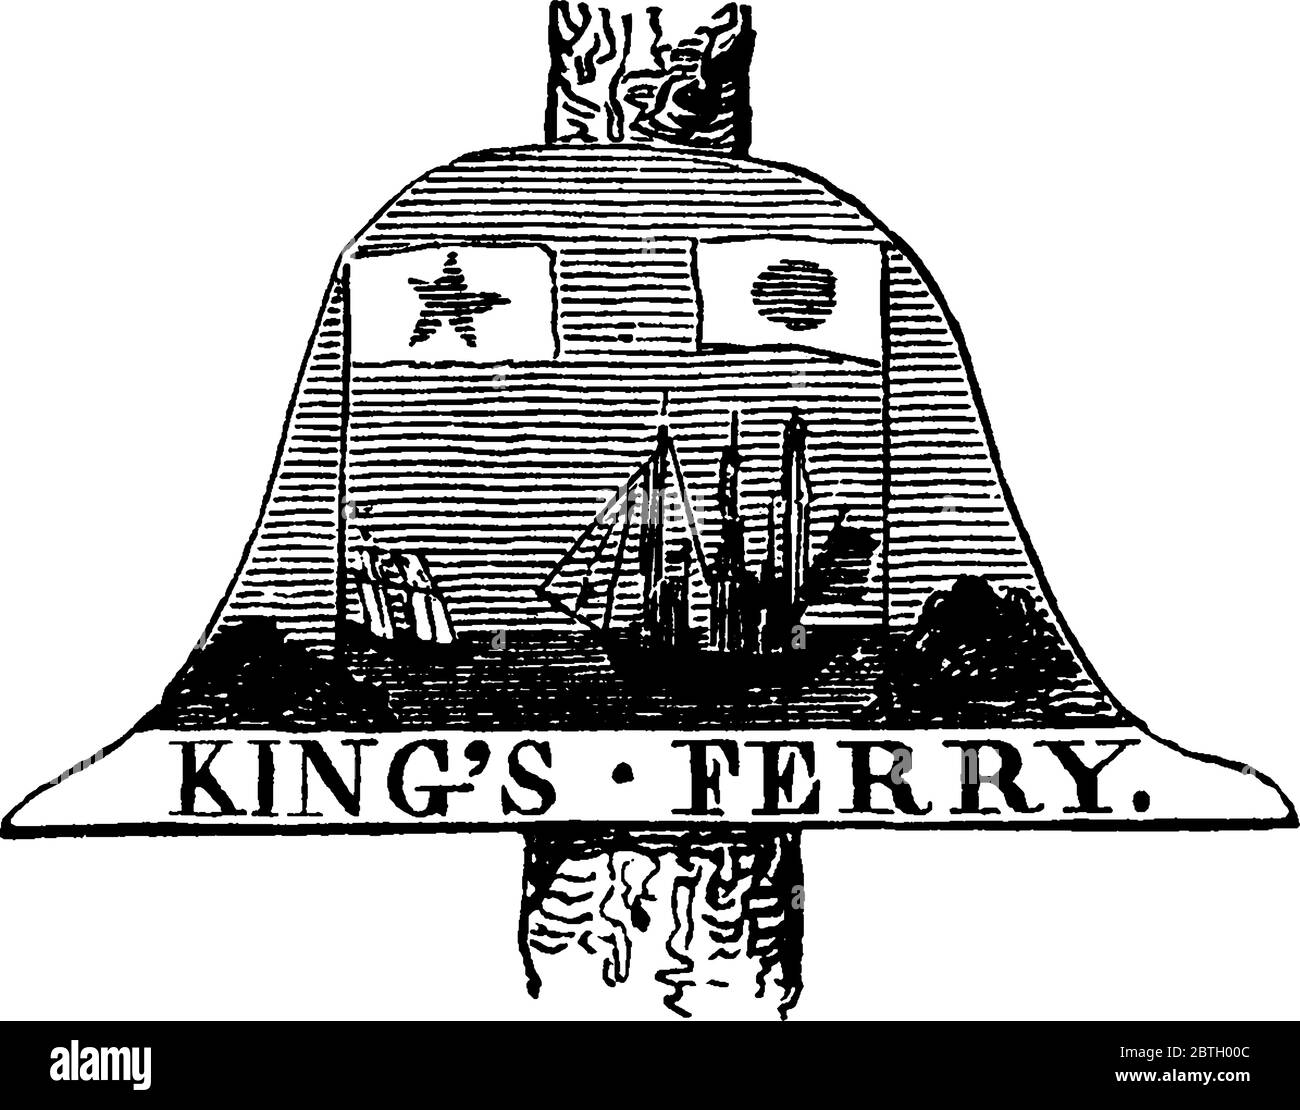 Un vieux panneau pour King's Ferry sur la rivière Hudson, dessin de ligne d'époque ou illustration de gravure. Illustration de Vecteur